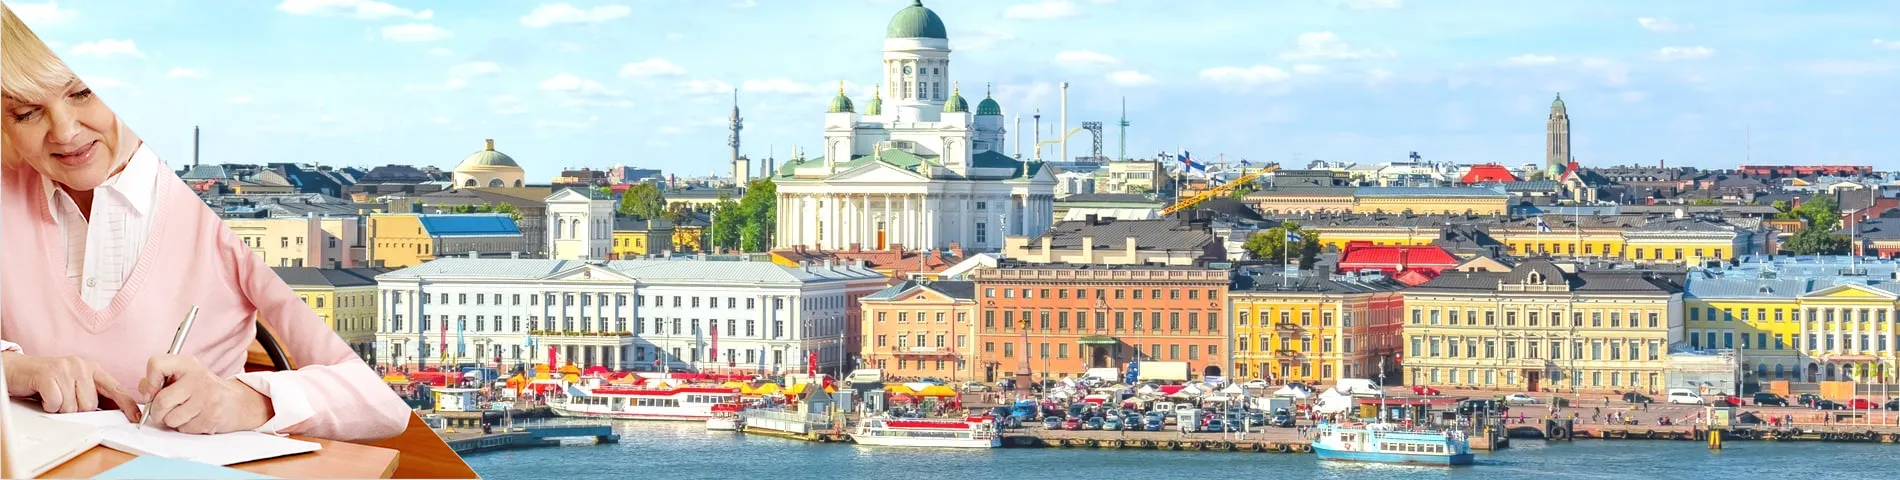 Гельсінкі - Курси для людей зрілого віку (50+)